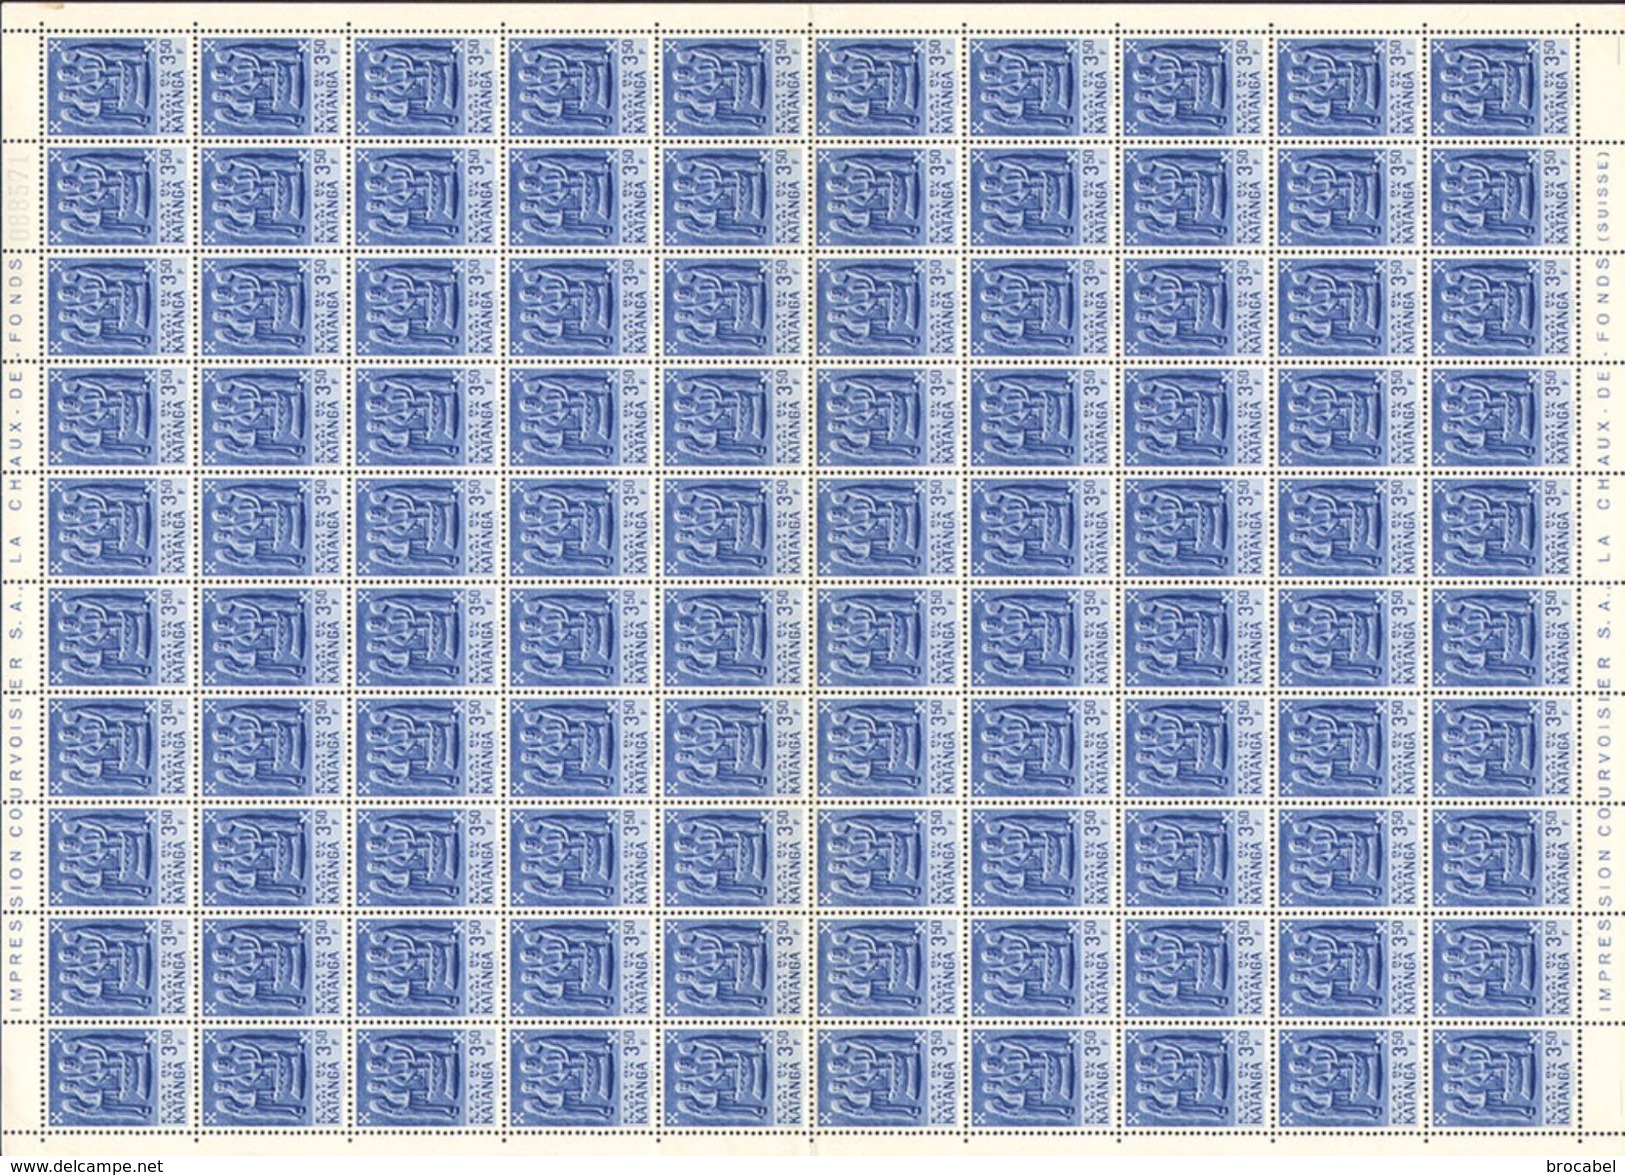 Katanga 0052/64 - 13 Feuilles / sheet  de 100 (+ 100 x N*54 -50c- en morceaux de feuille) ( br_st )